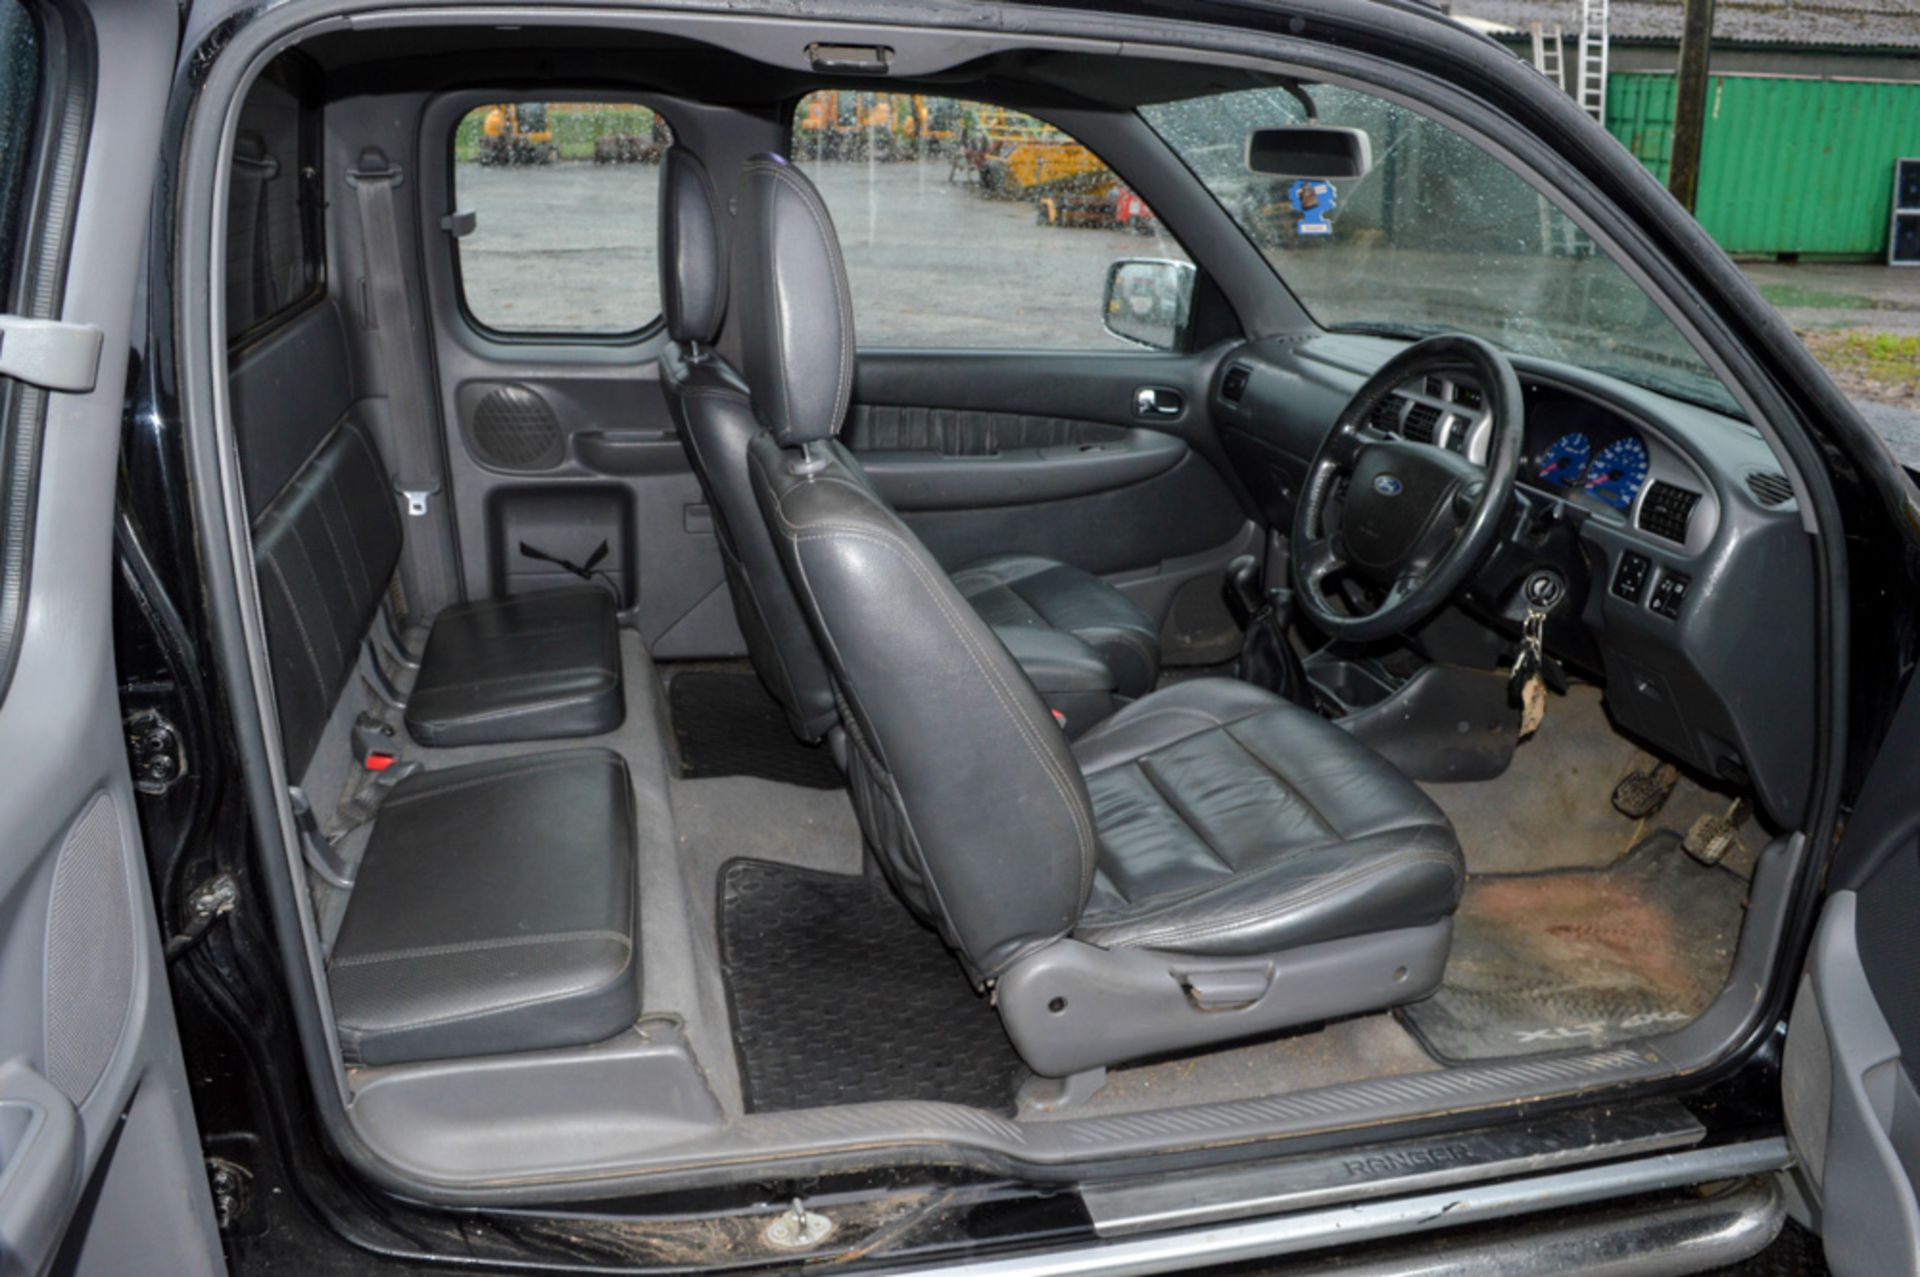 Ford Ranger S-CAB XLT Thunder 4WD manual pick up Registration Number: ML54 EFE Date of registration: - Image 8 of 11